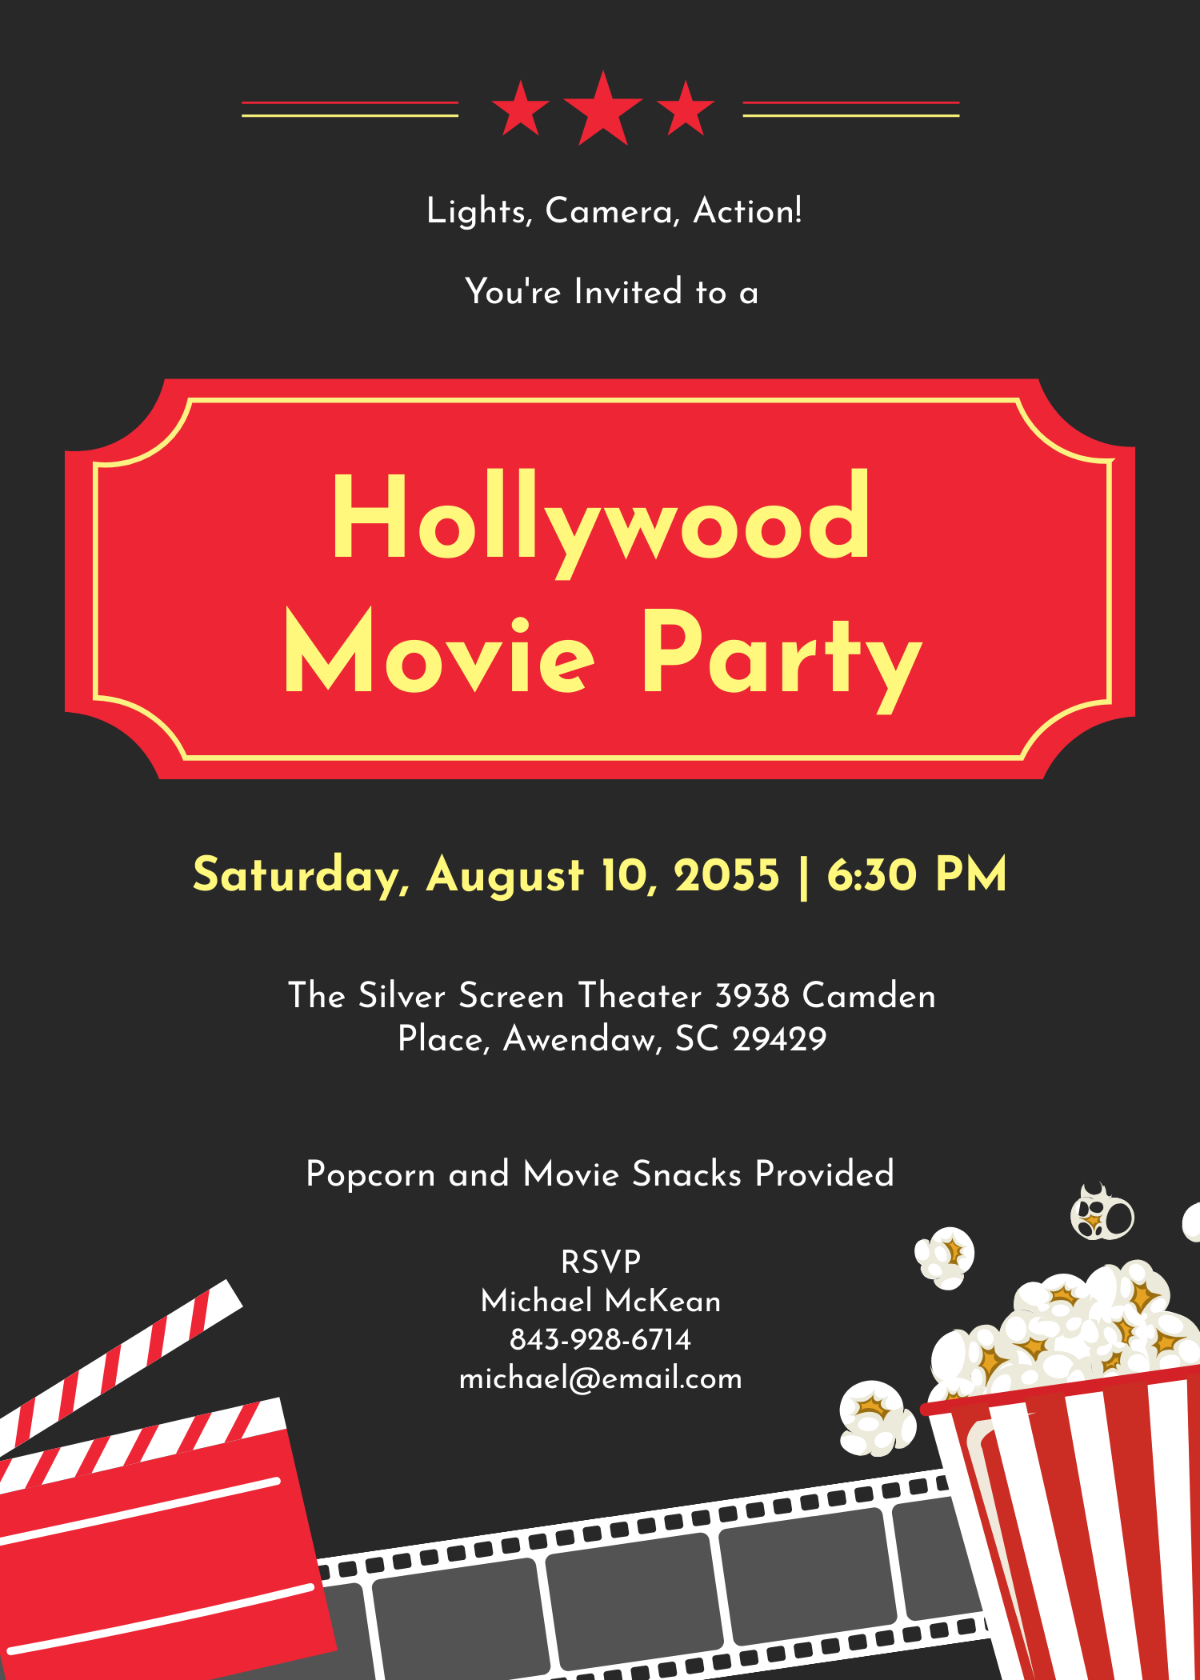 Hollywood Movie Party Invitation